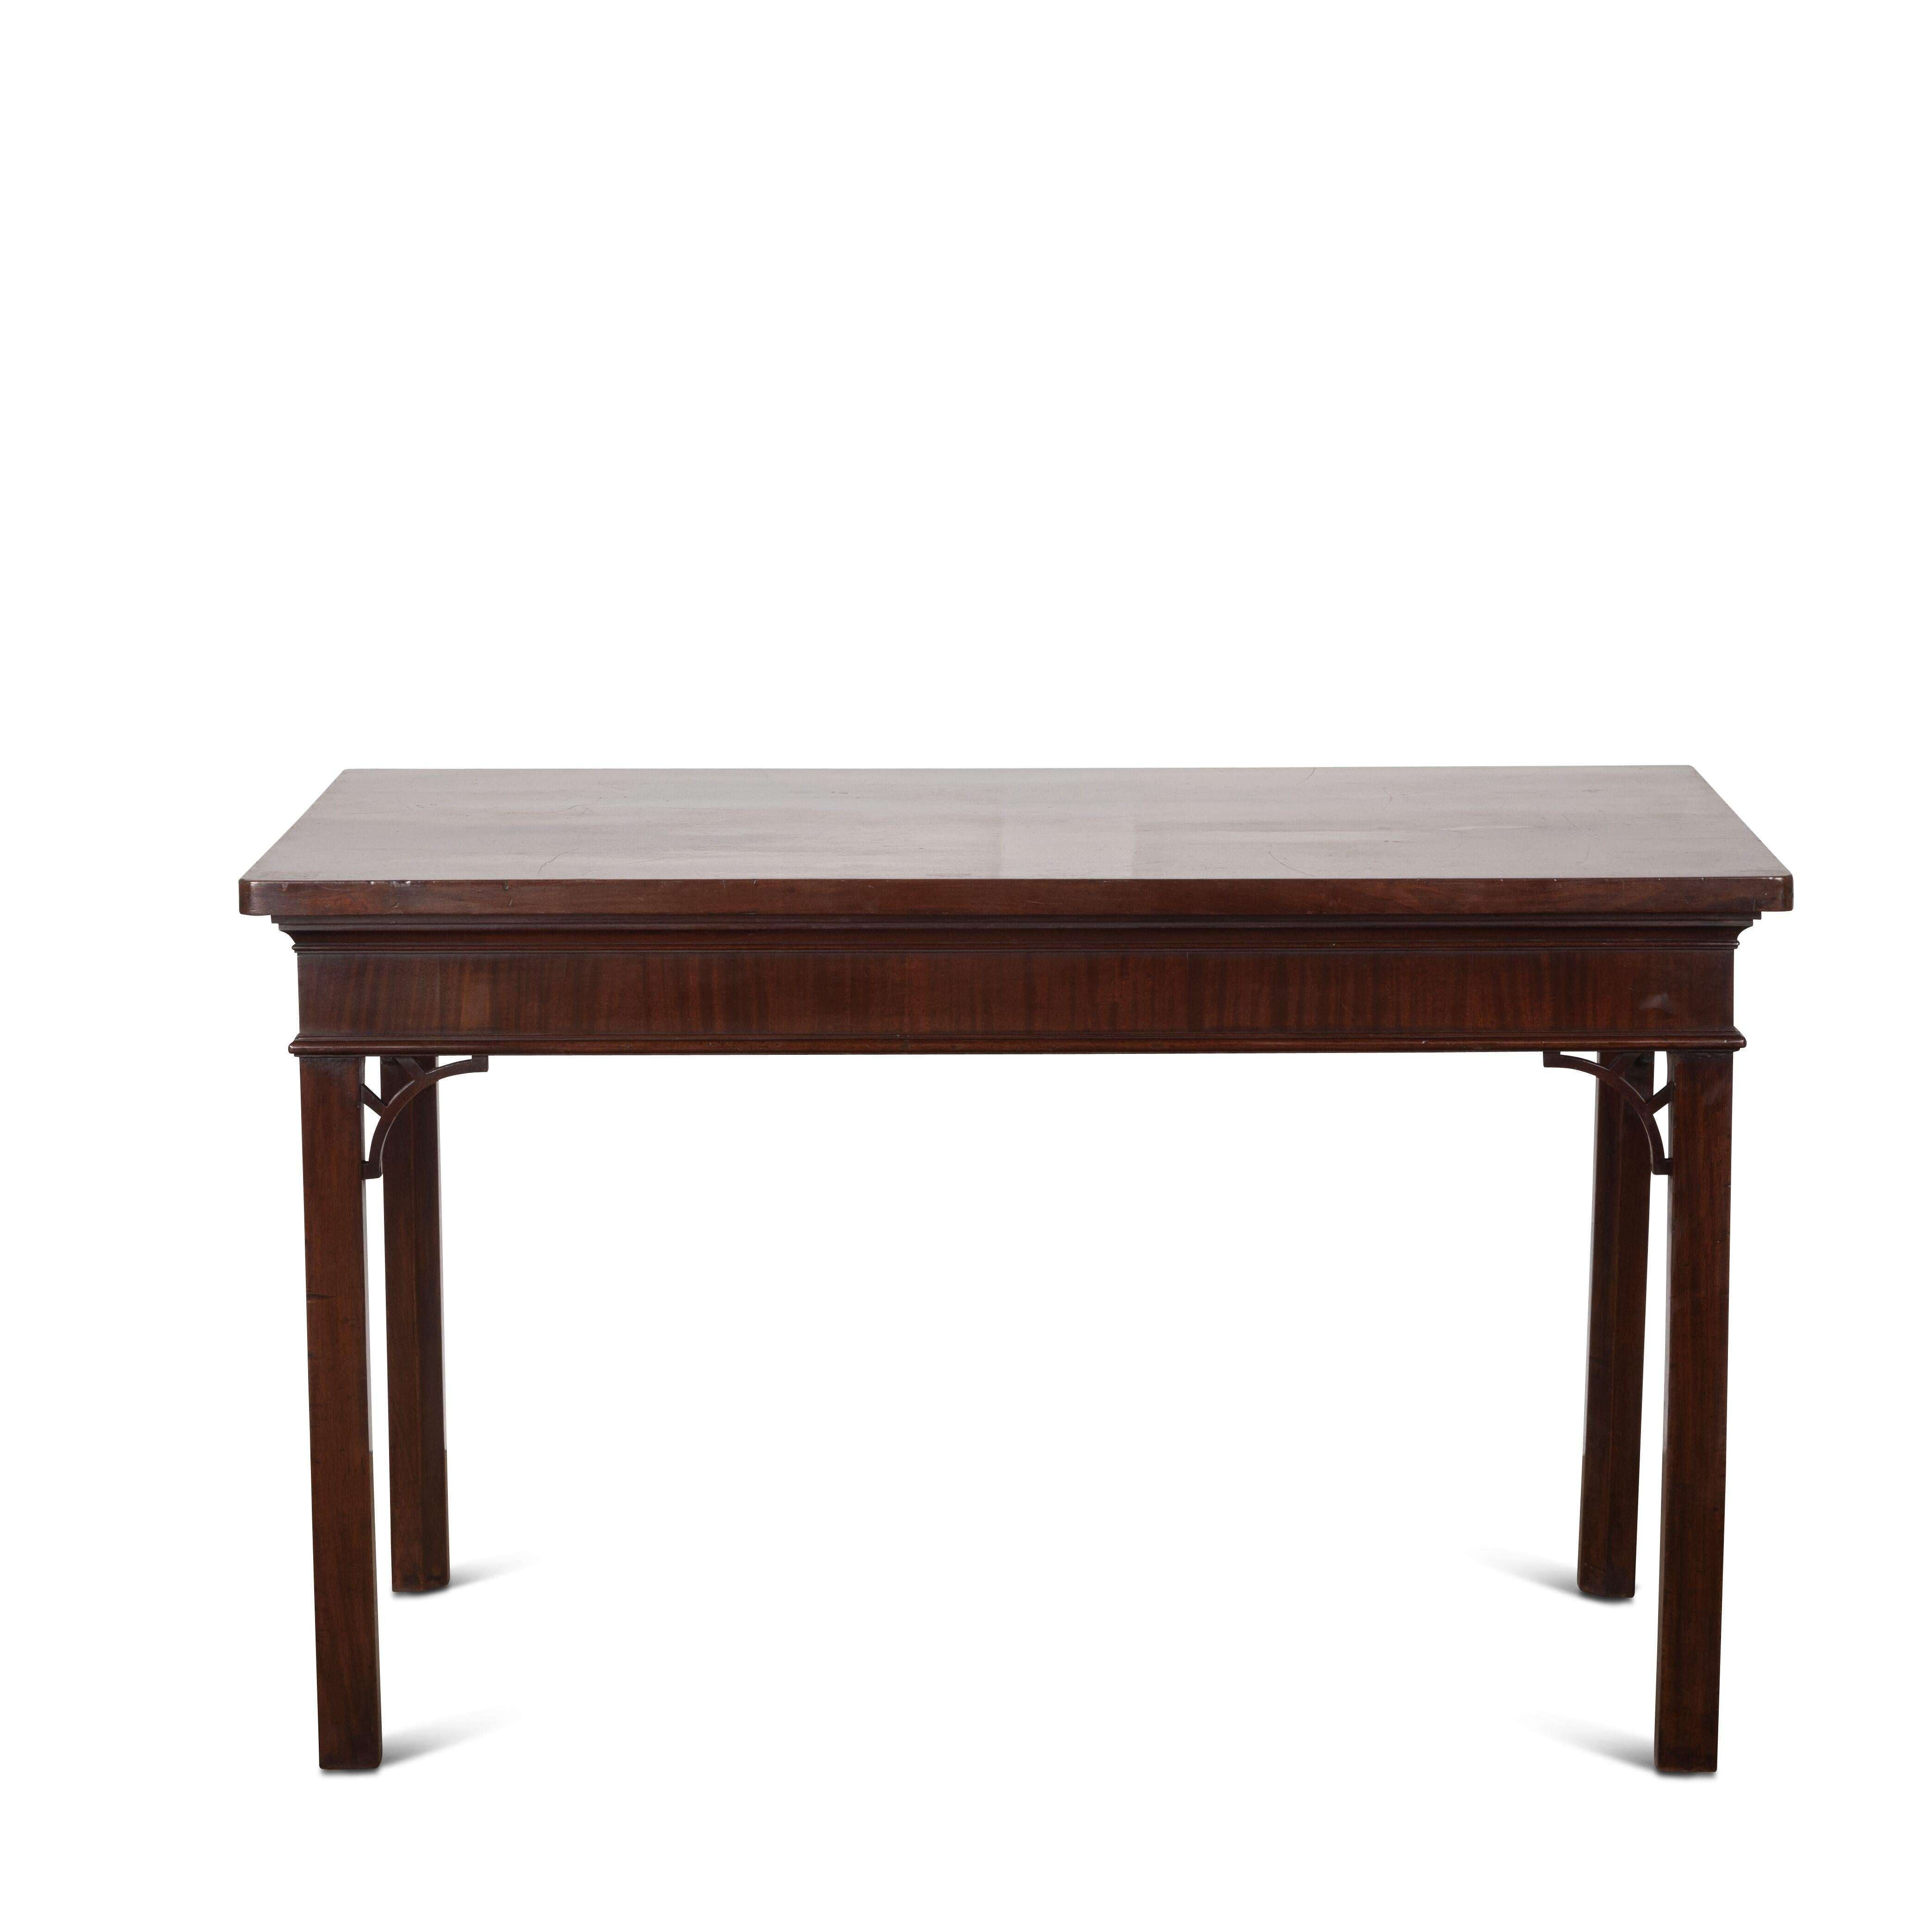 Eine gute Mitte C18th Mahagoni servieren / Halle Tisch der zurückhaltenden Form. Die dicke, einteilige Platte liegt über einem vertikal furnierten Fries mit Zierleisten und steht auf hohen, abgeschrägten Beinen mit den originalen, geschnitzten